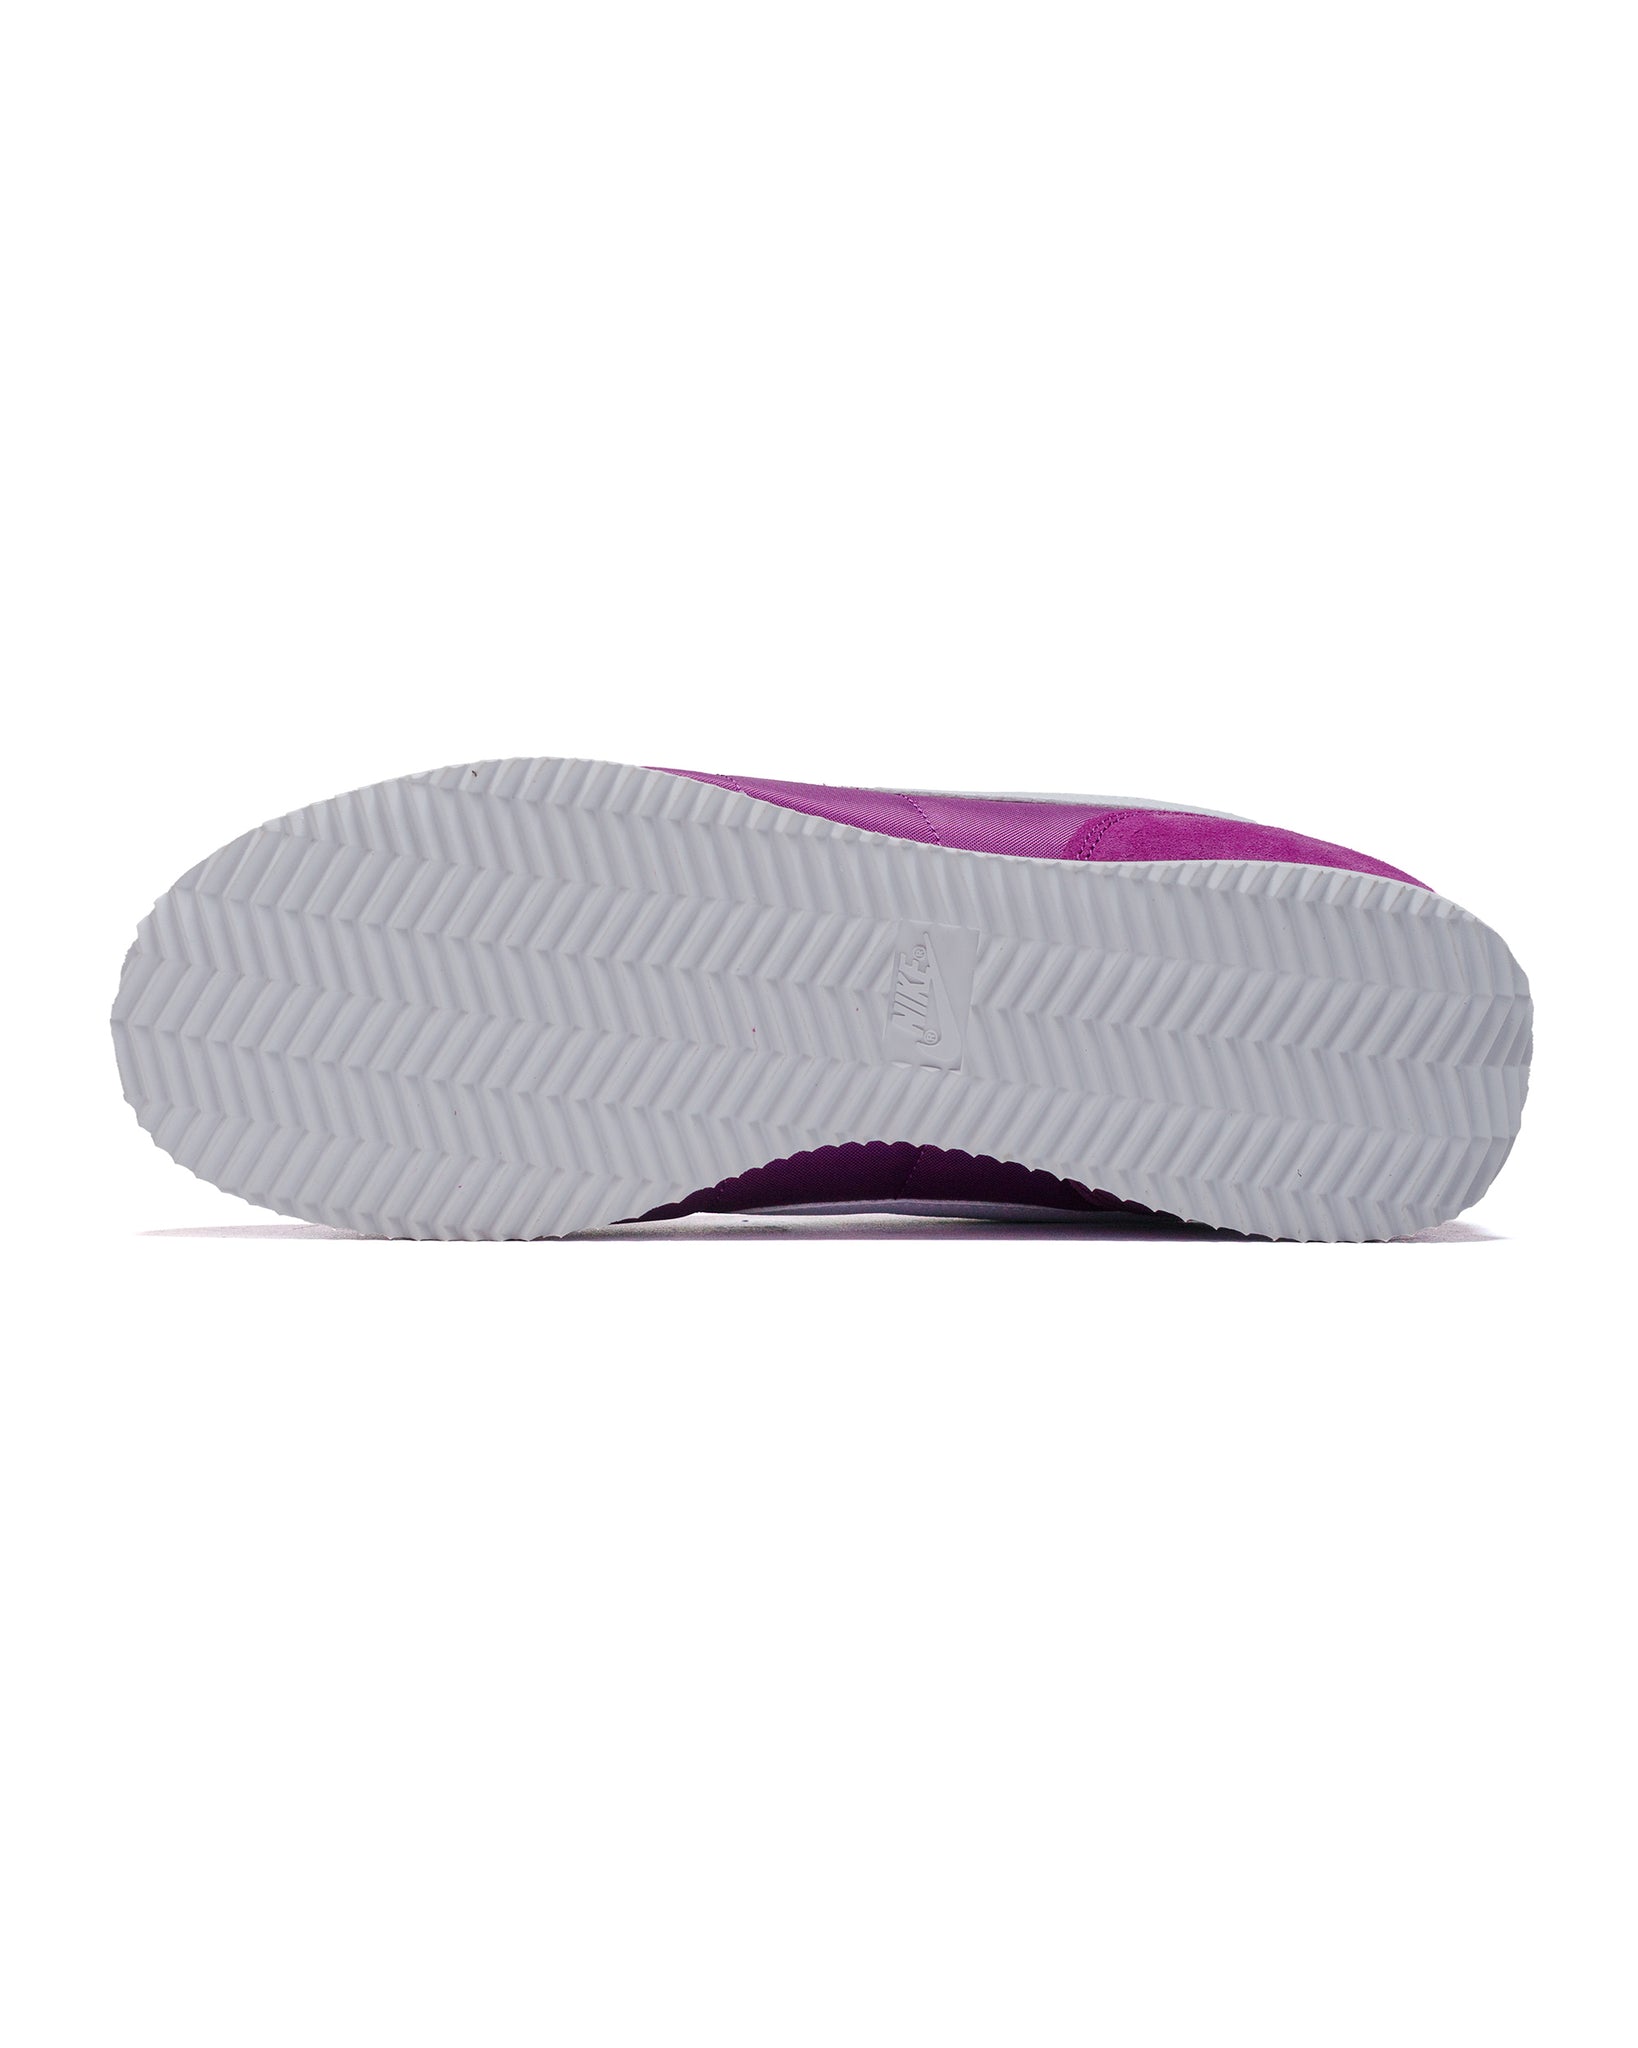 Nike Cortez TXT Viotech/White sole